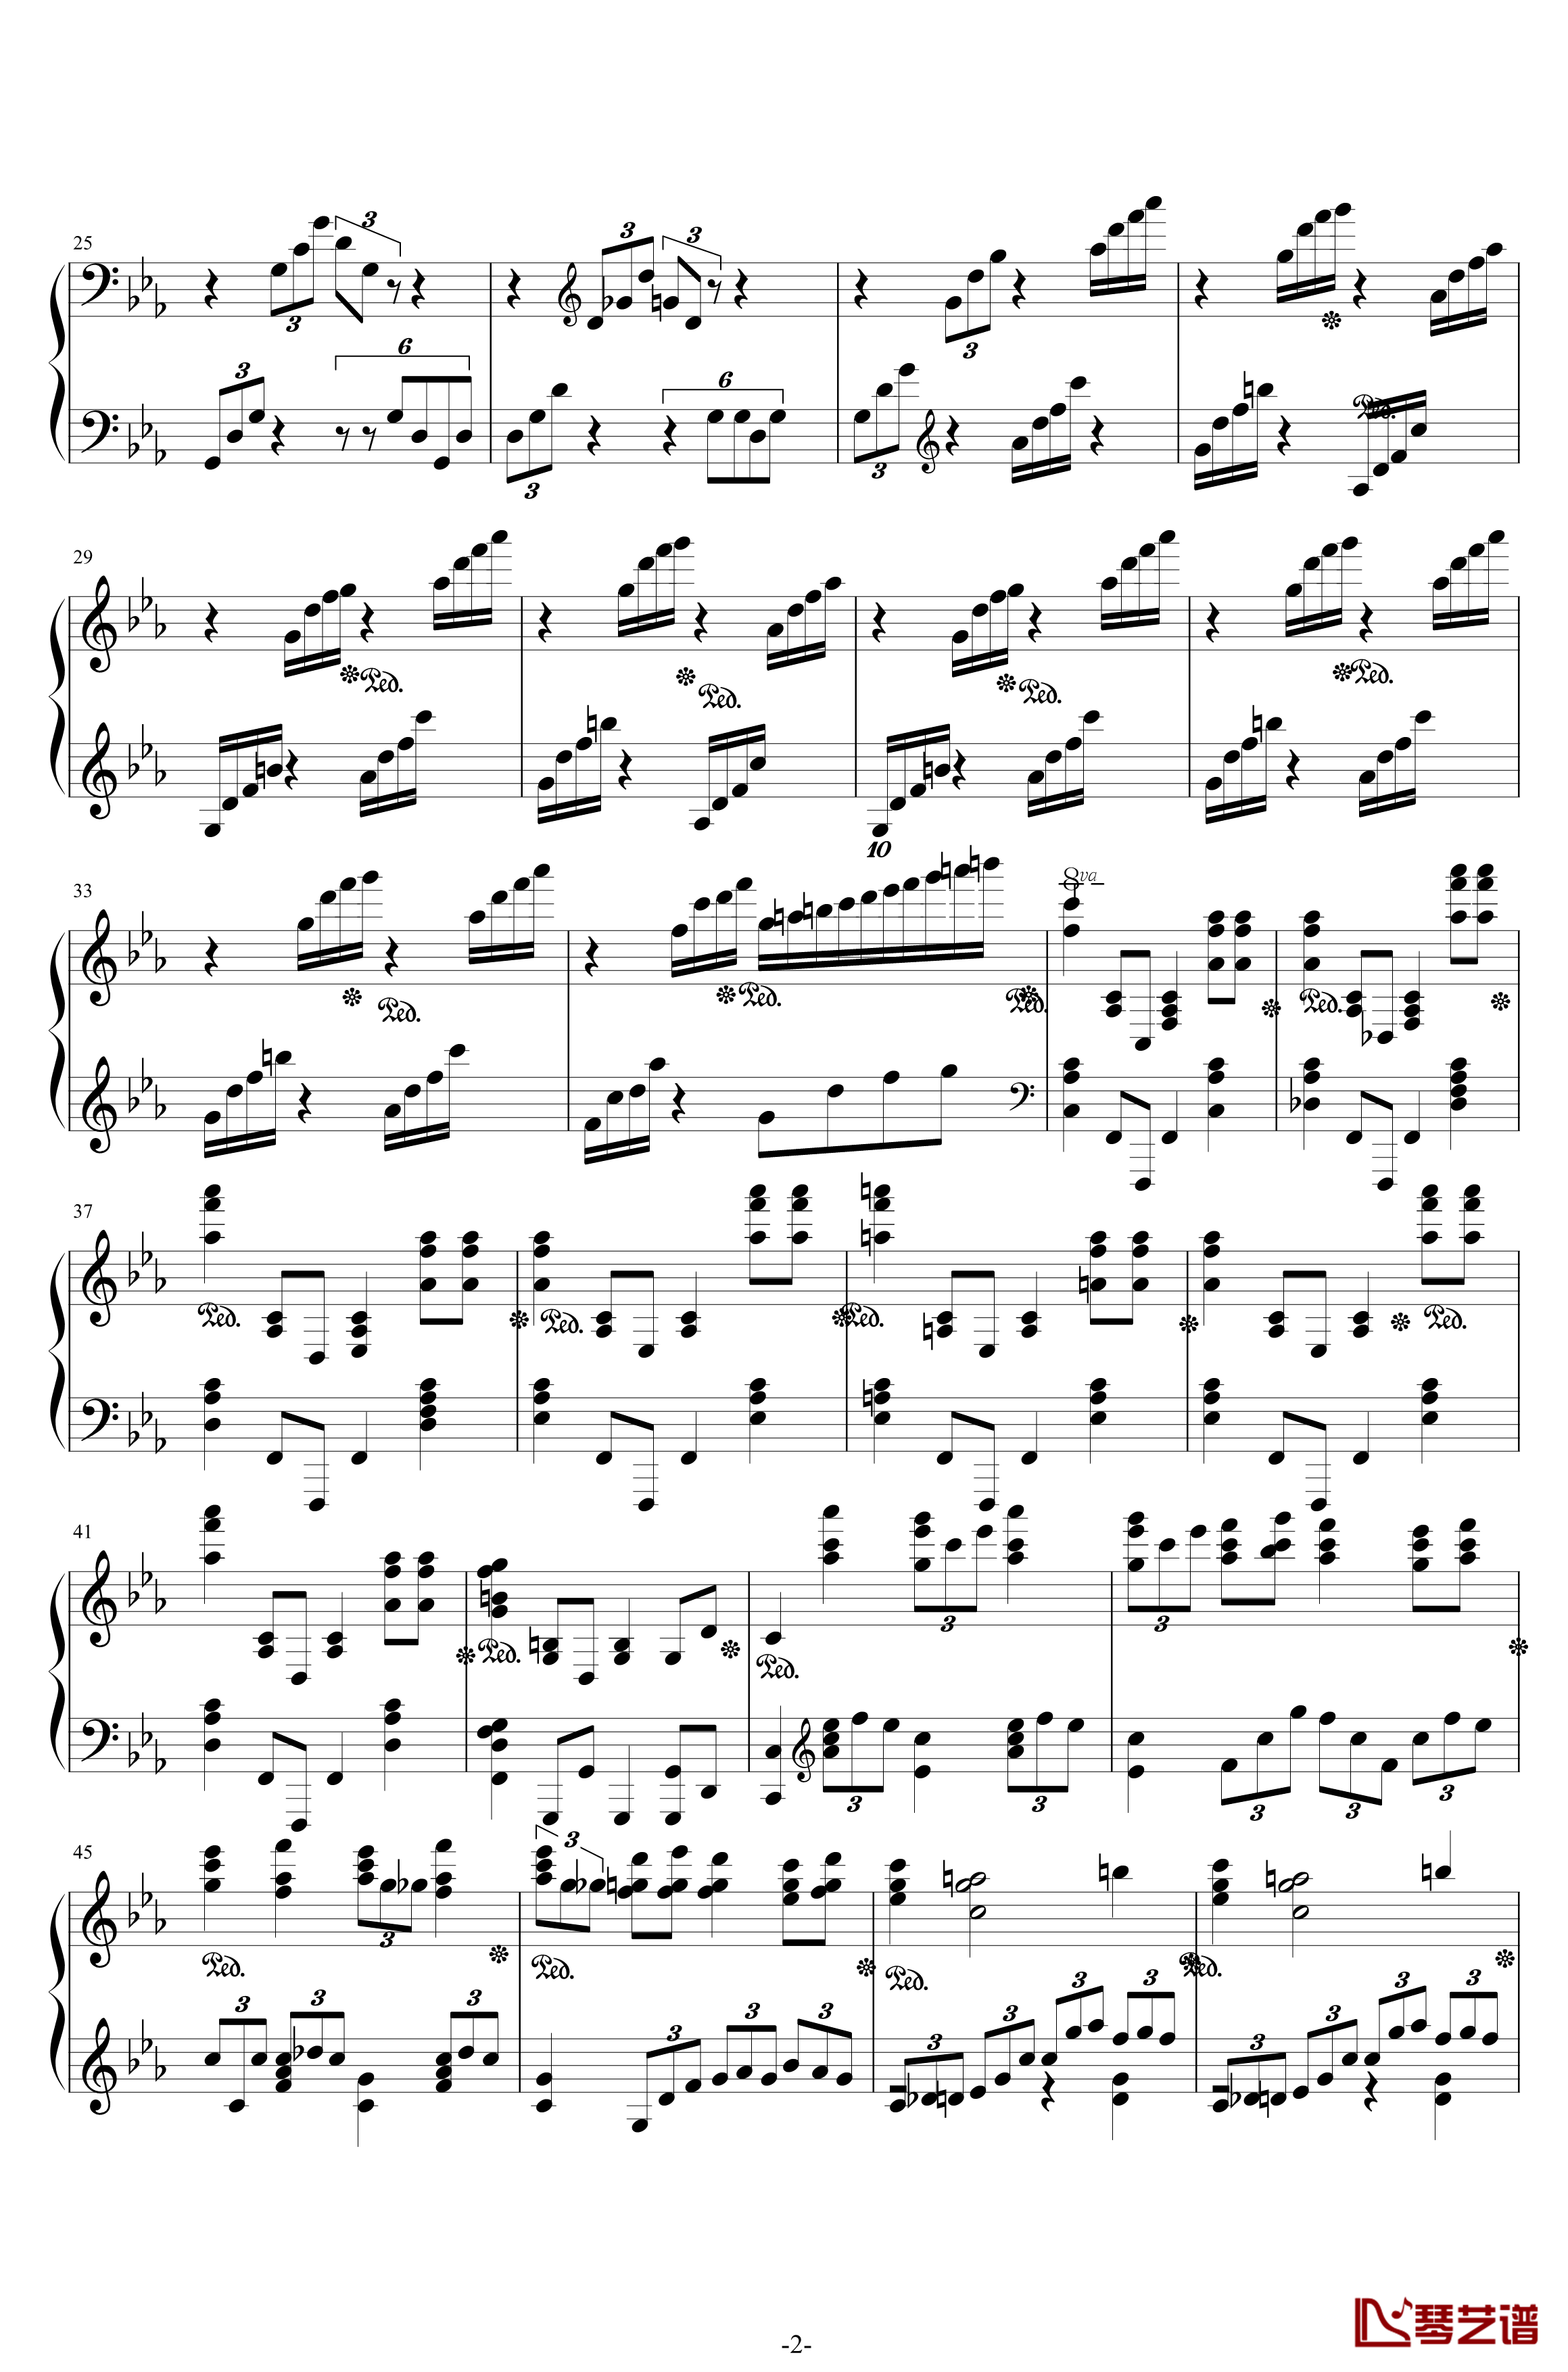 第二钢琴协奏曲钢琴谱-第三乐章独奏版-c小调-拉赫马尼若夫